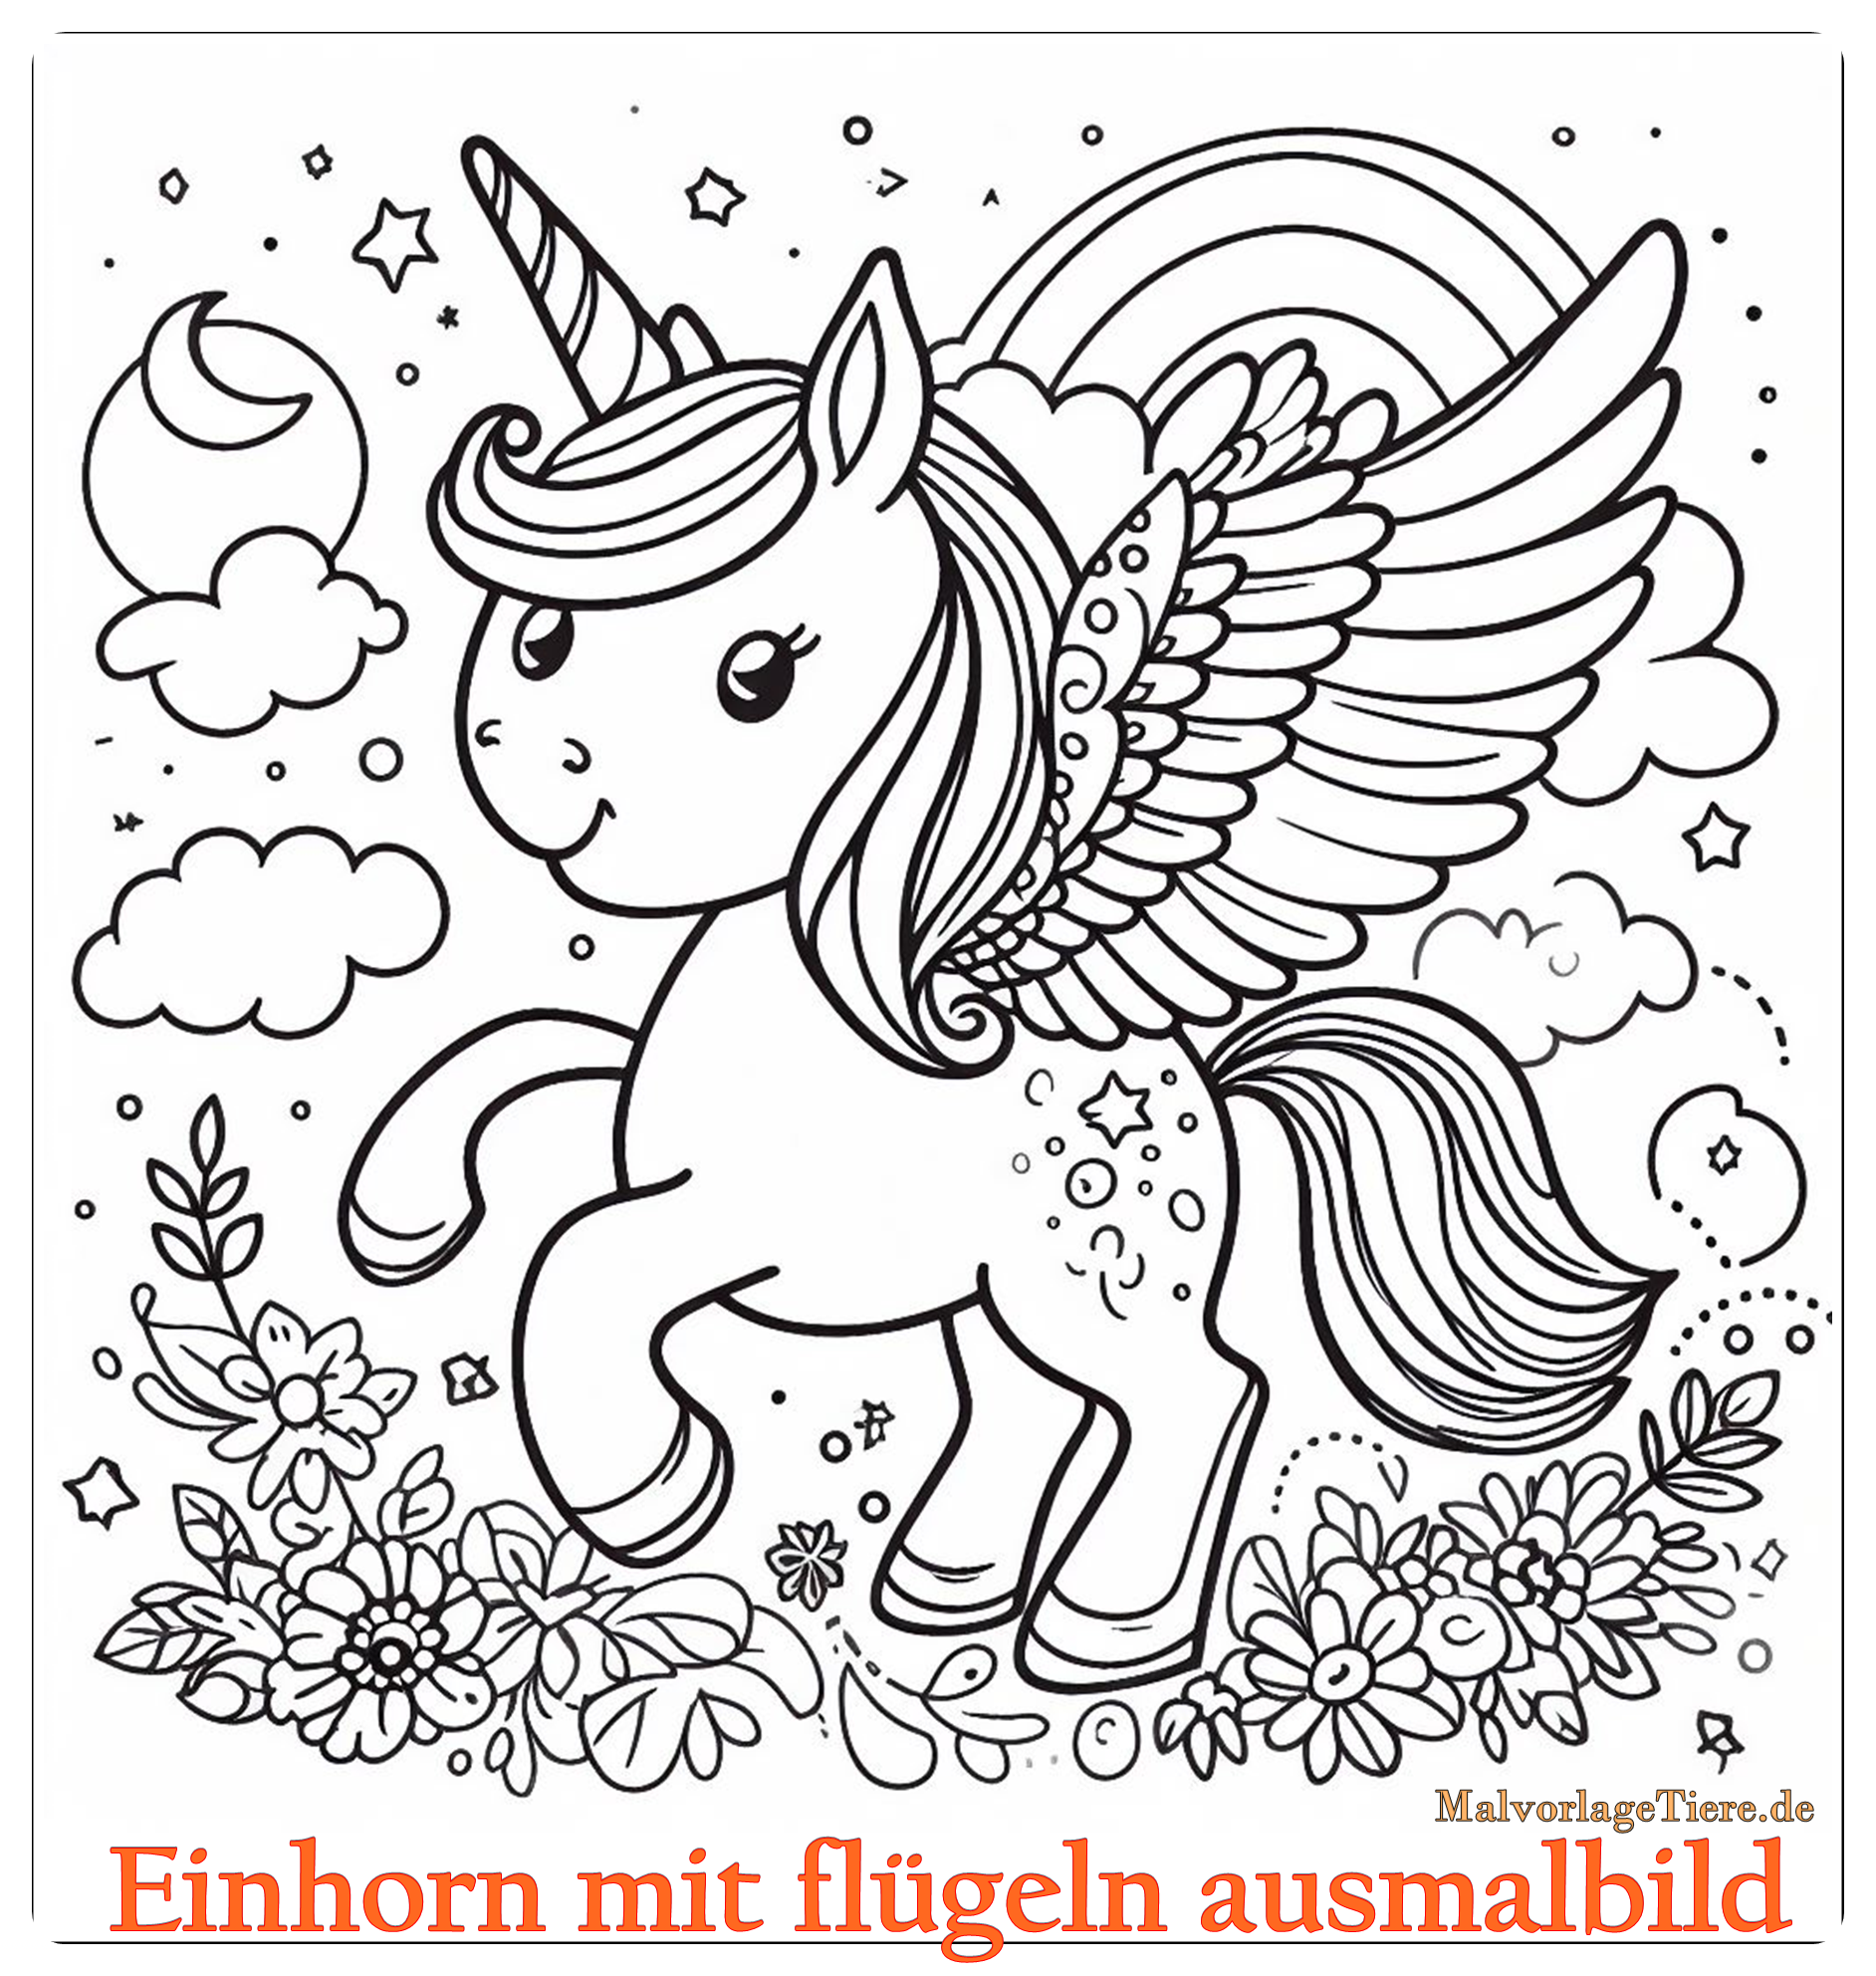 Einhorn mit flügeln ausmalbild 06 by malvorlagetiere.de